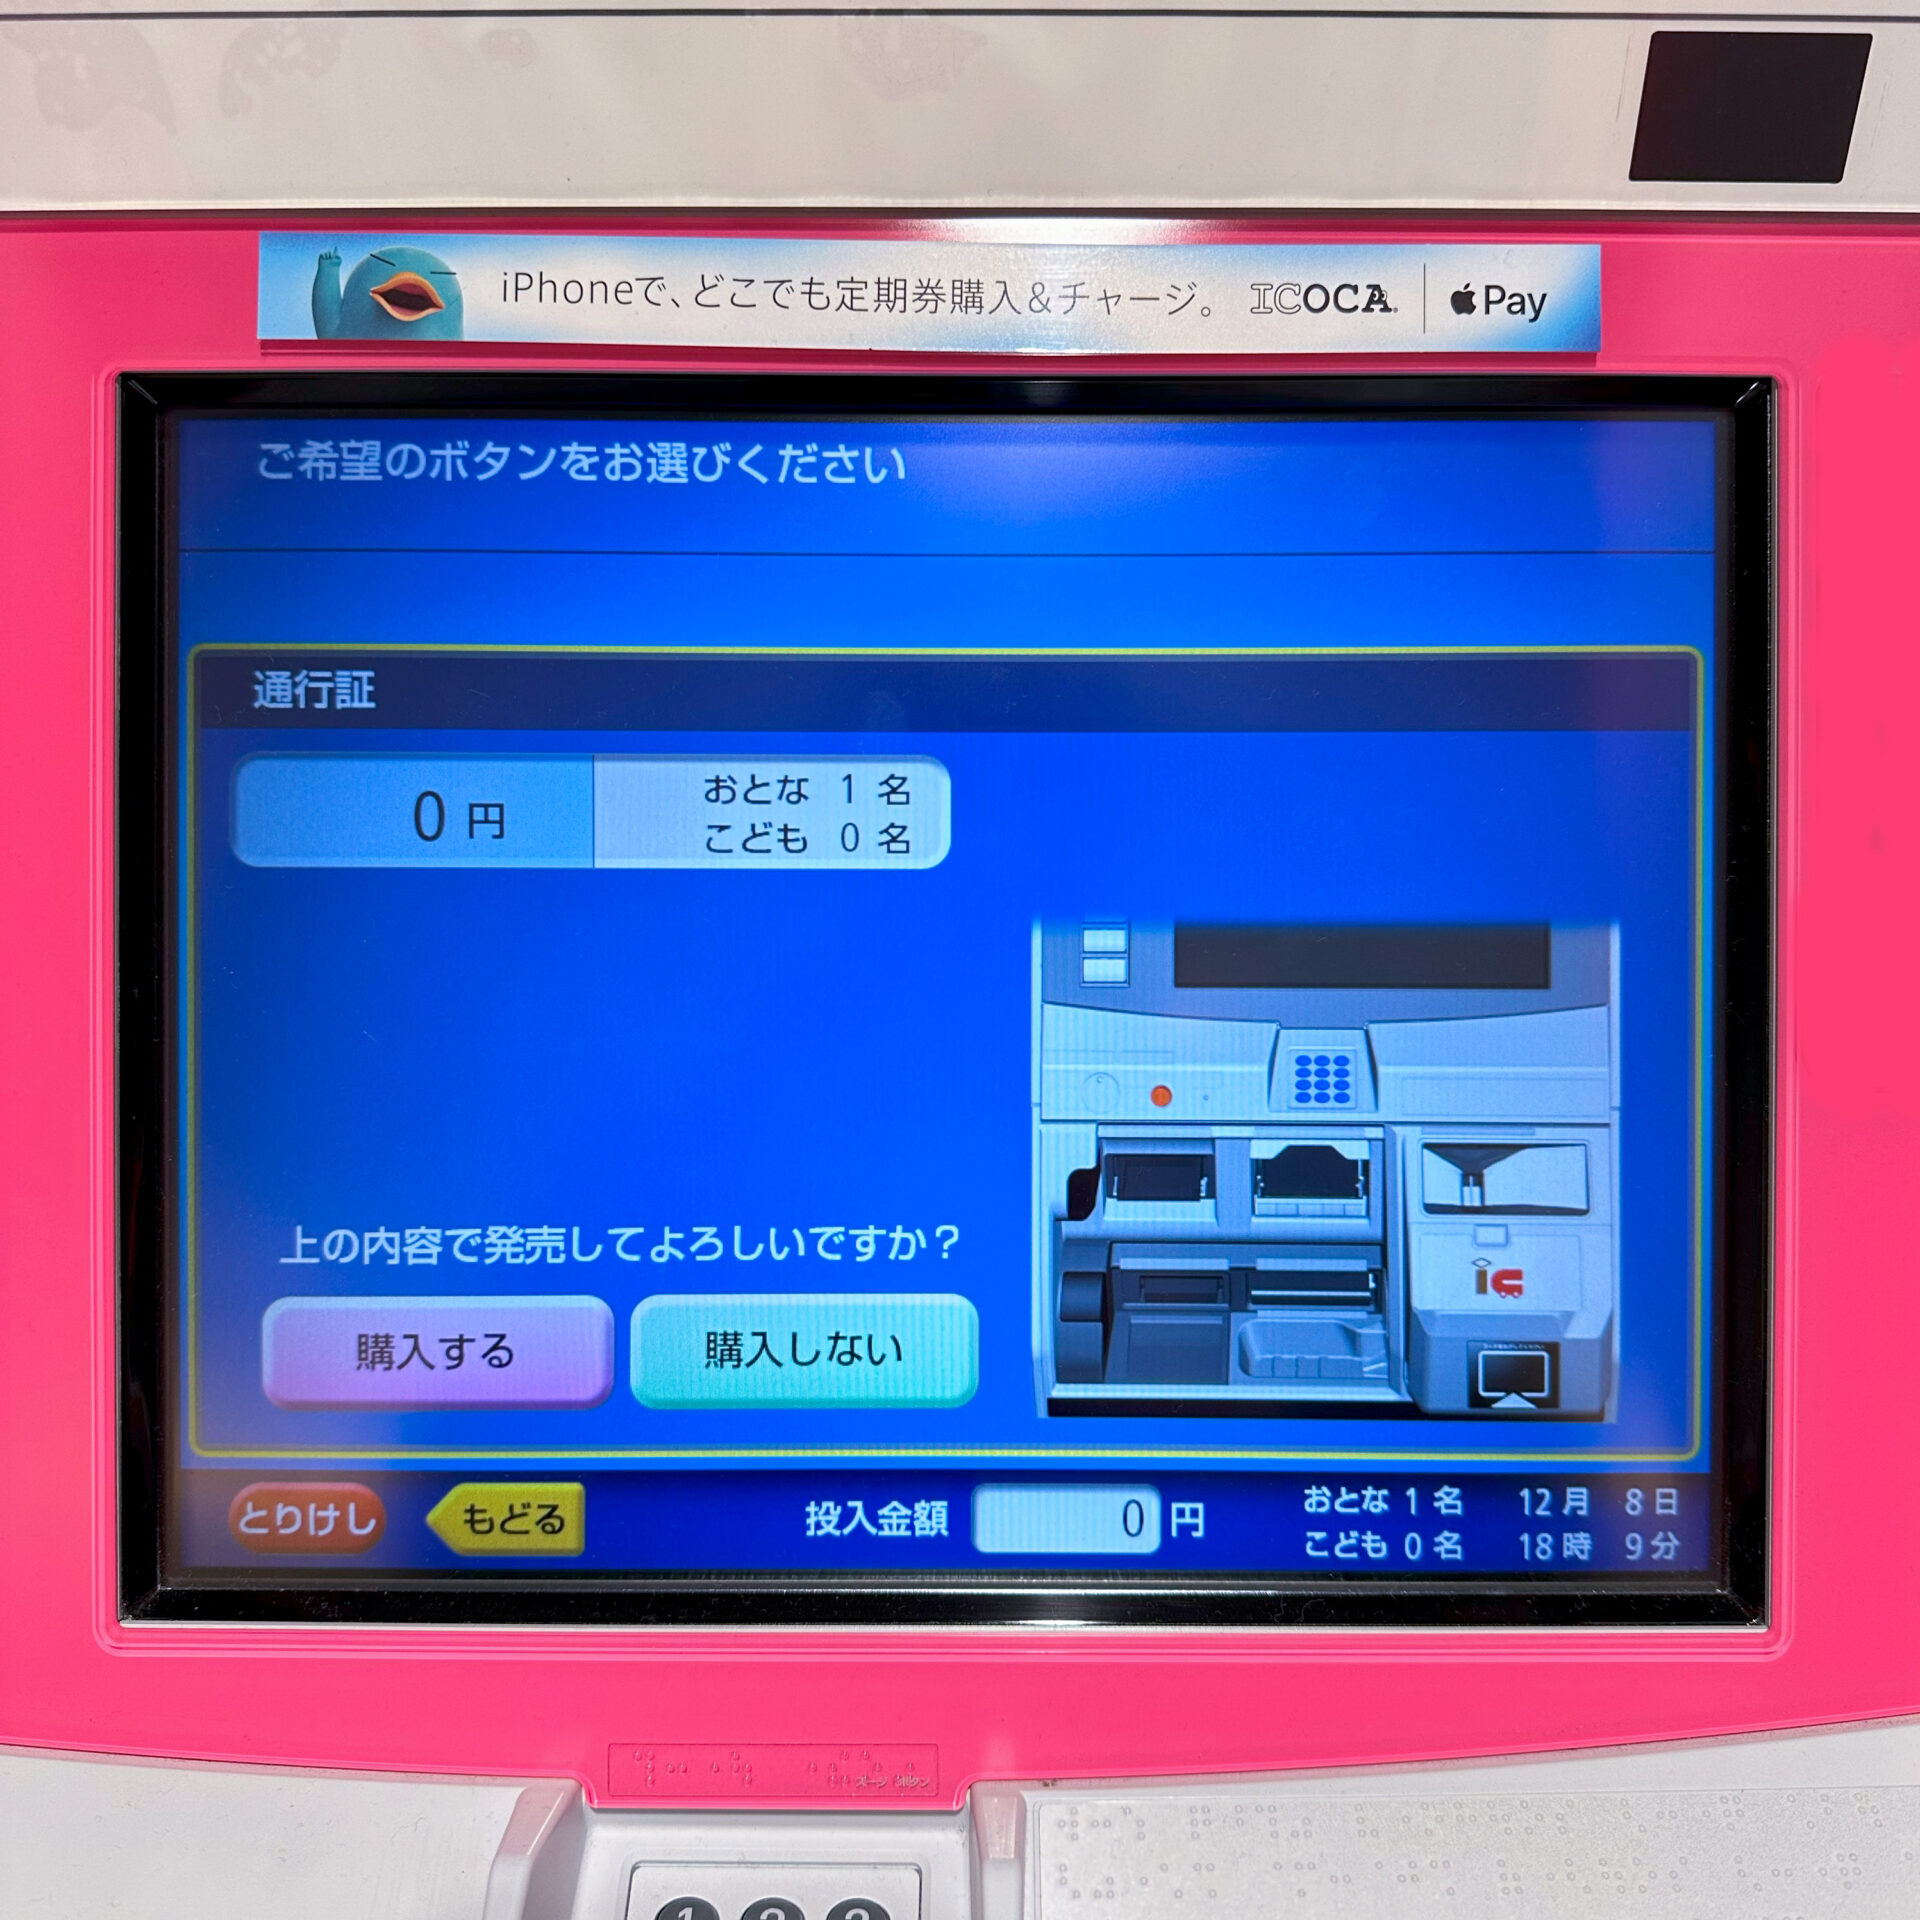 JR西日本近距離きっぷ券売機操作画面